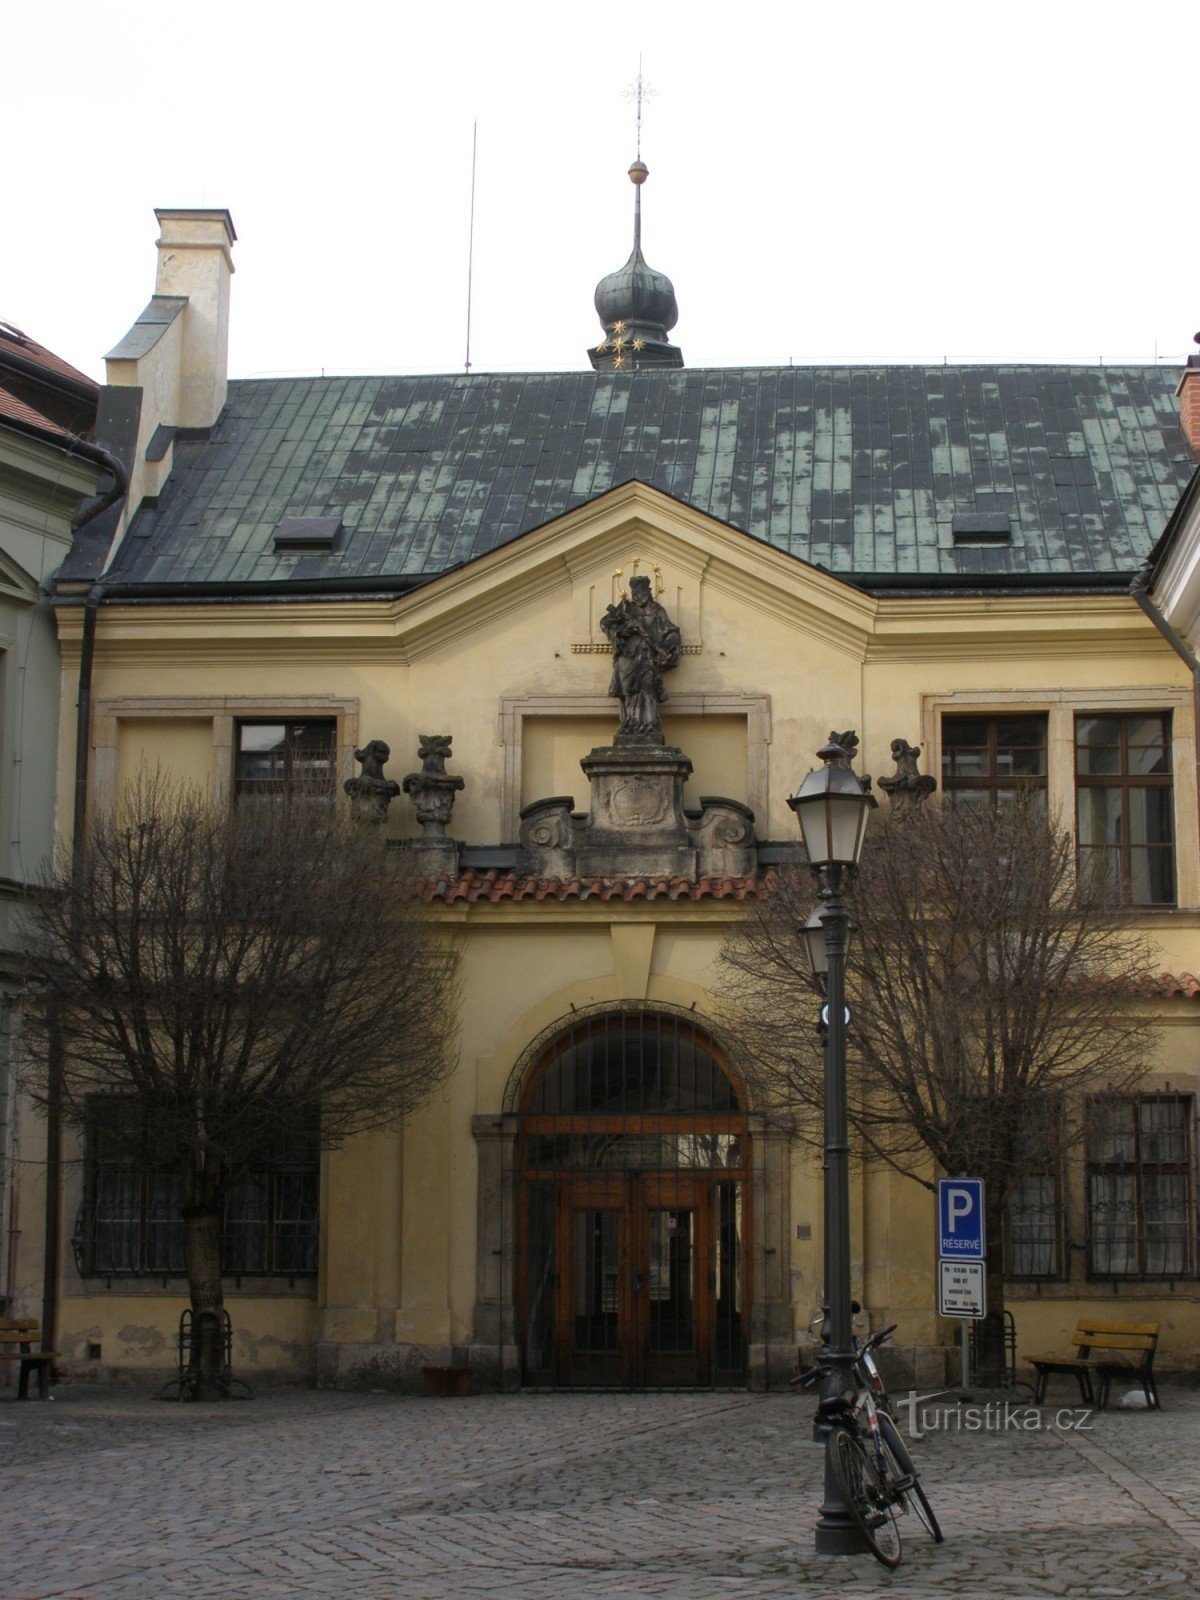 Hradec Králové – Municipal Music Hall